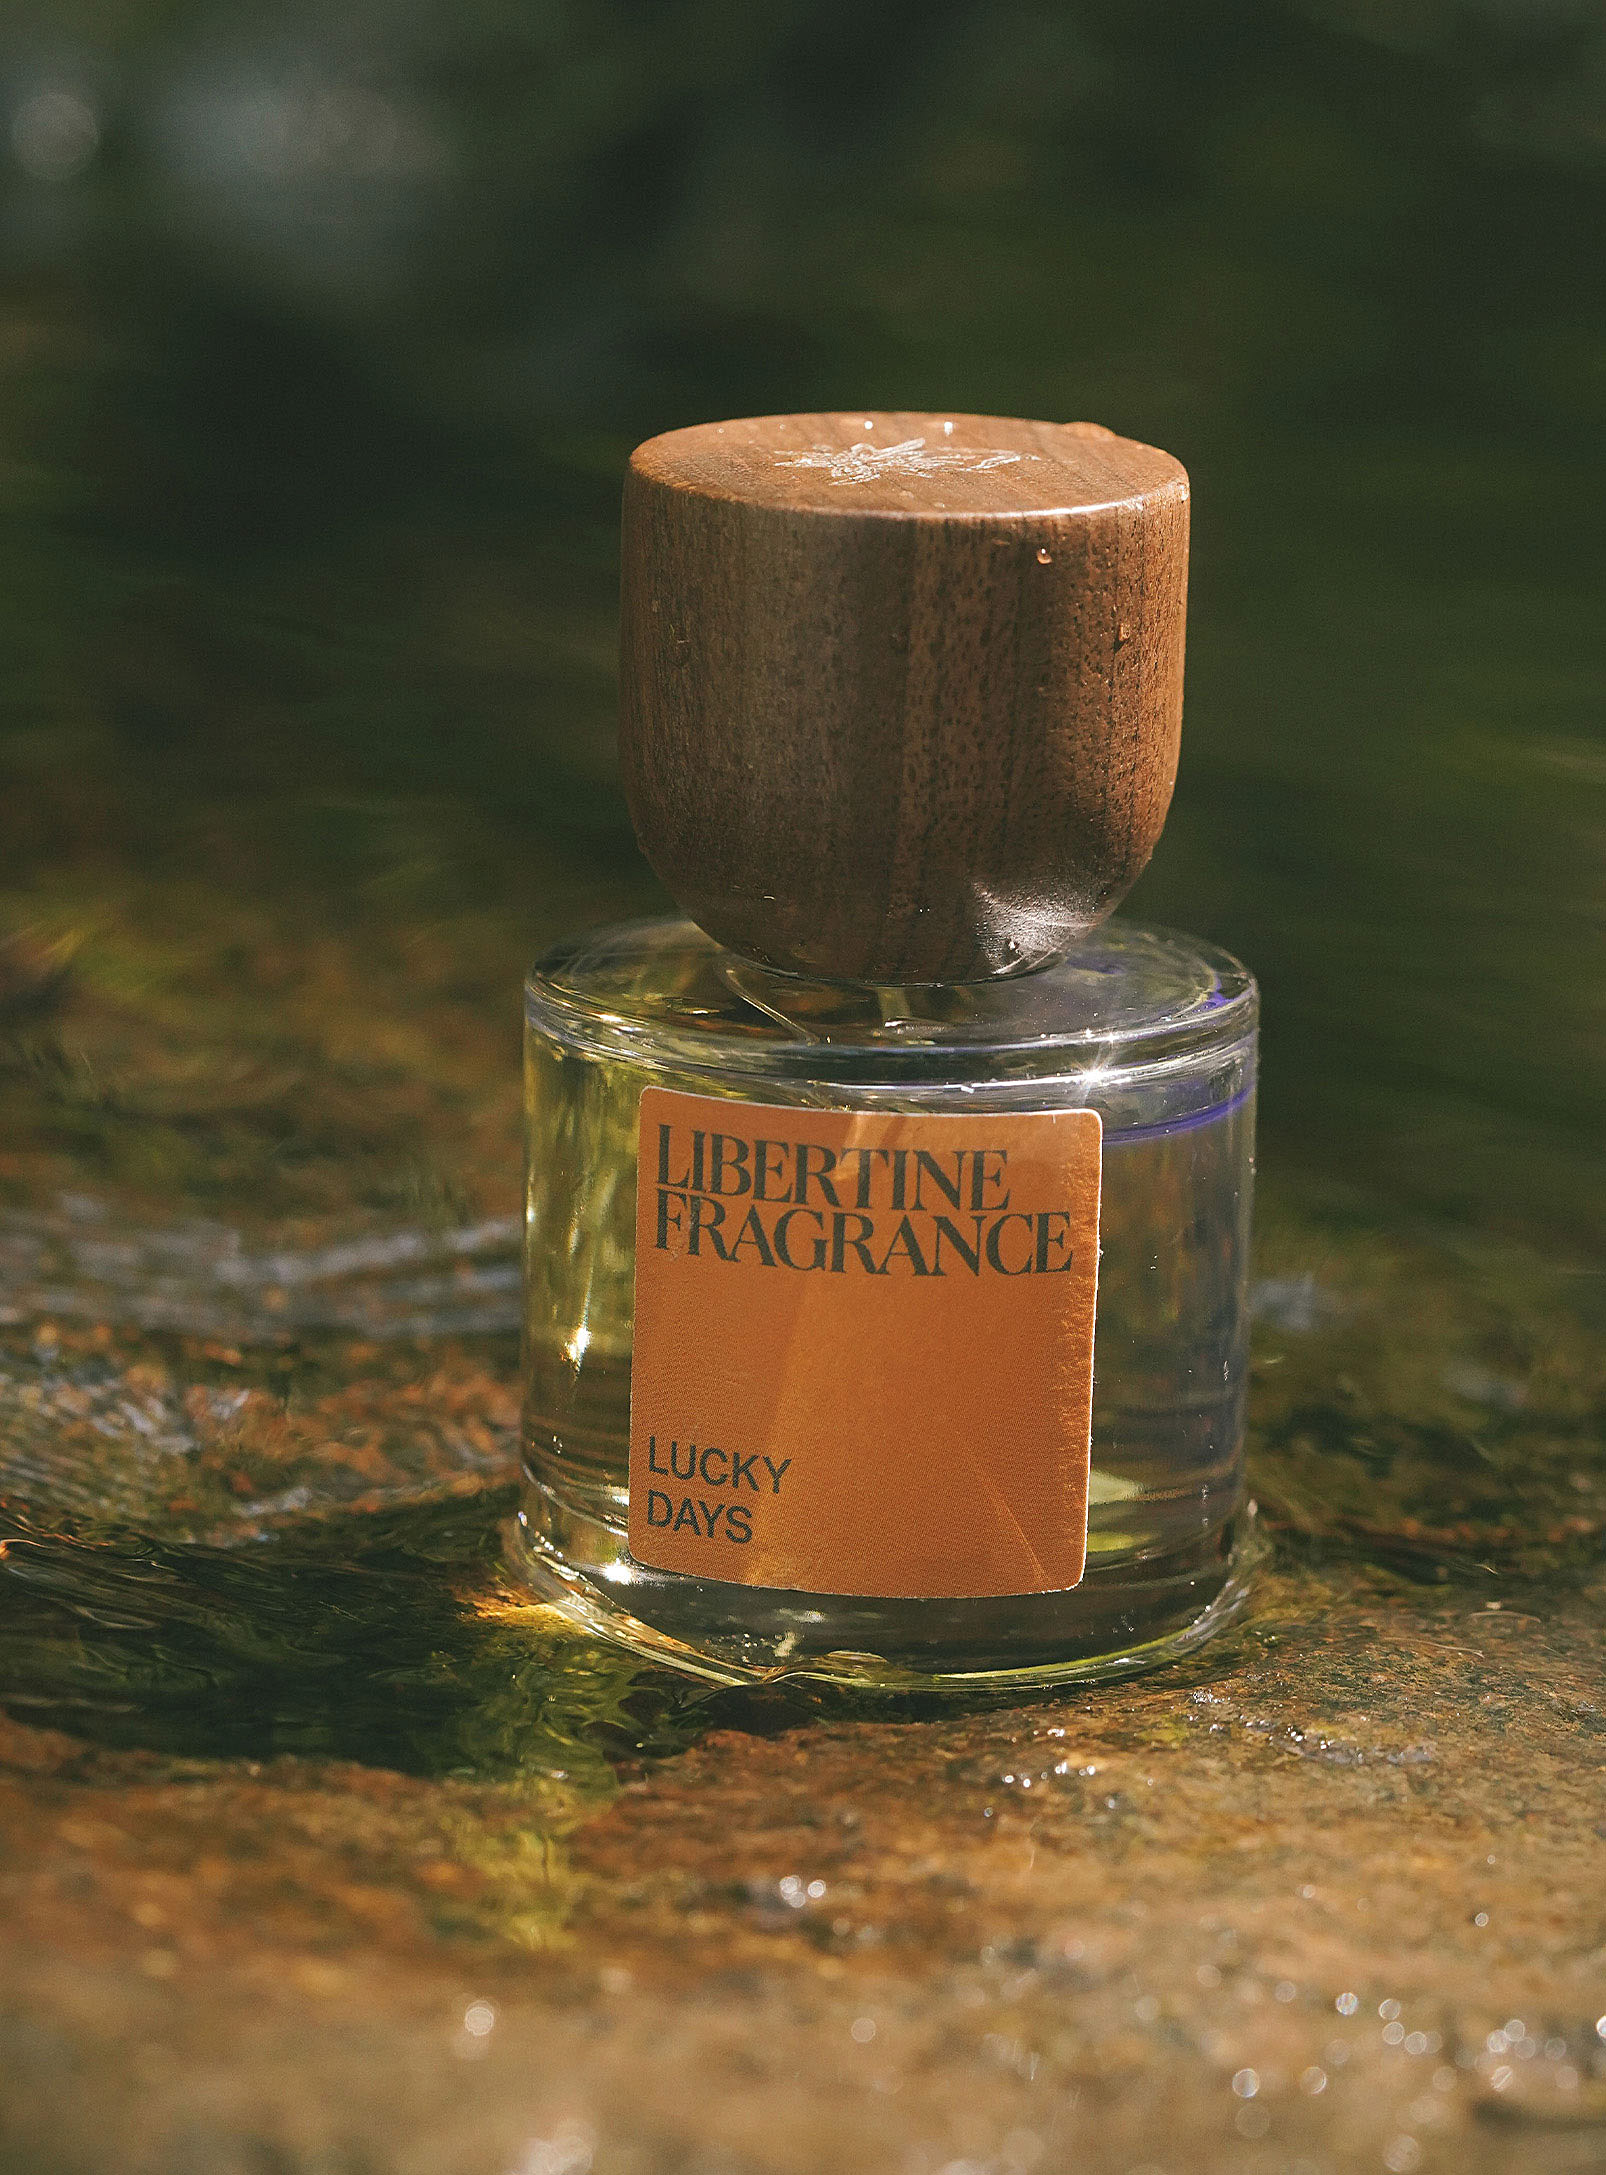 Libertine Fragrance - L'eau de parfum Lucky Days